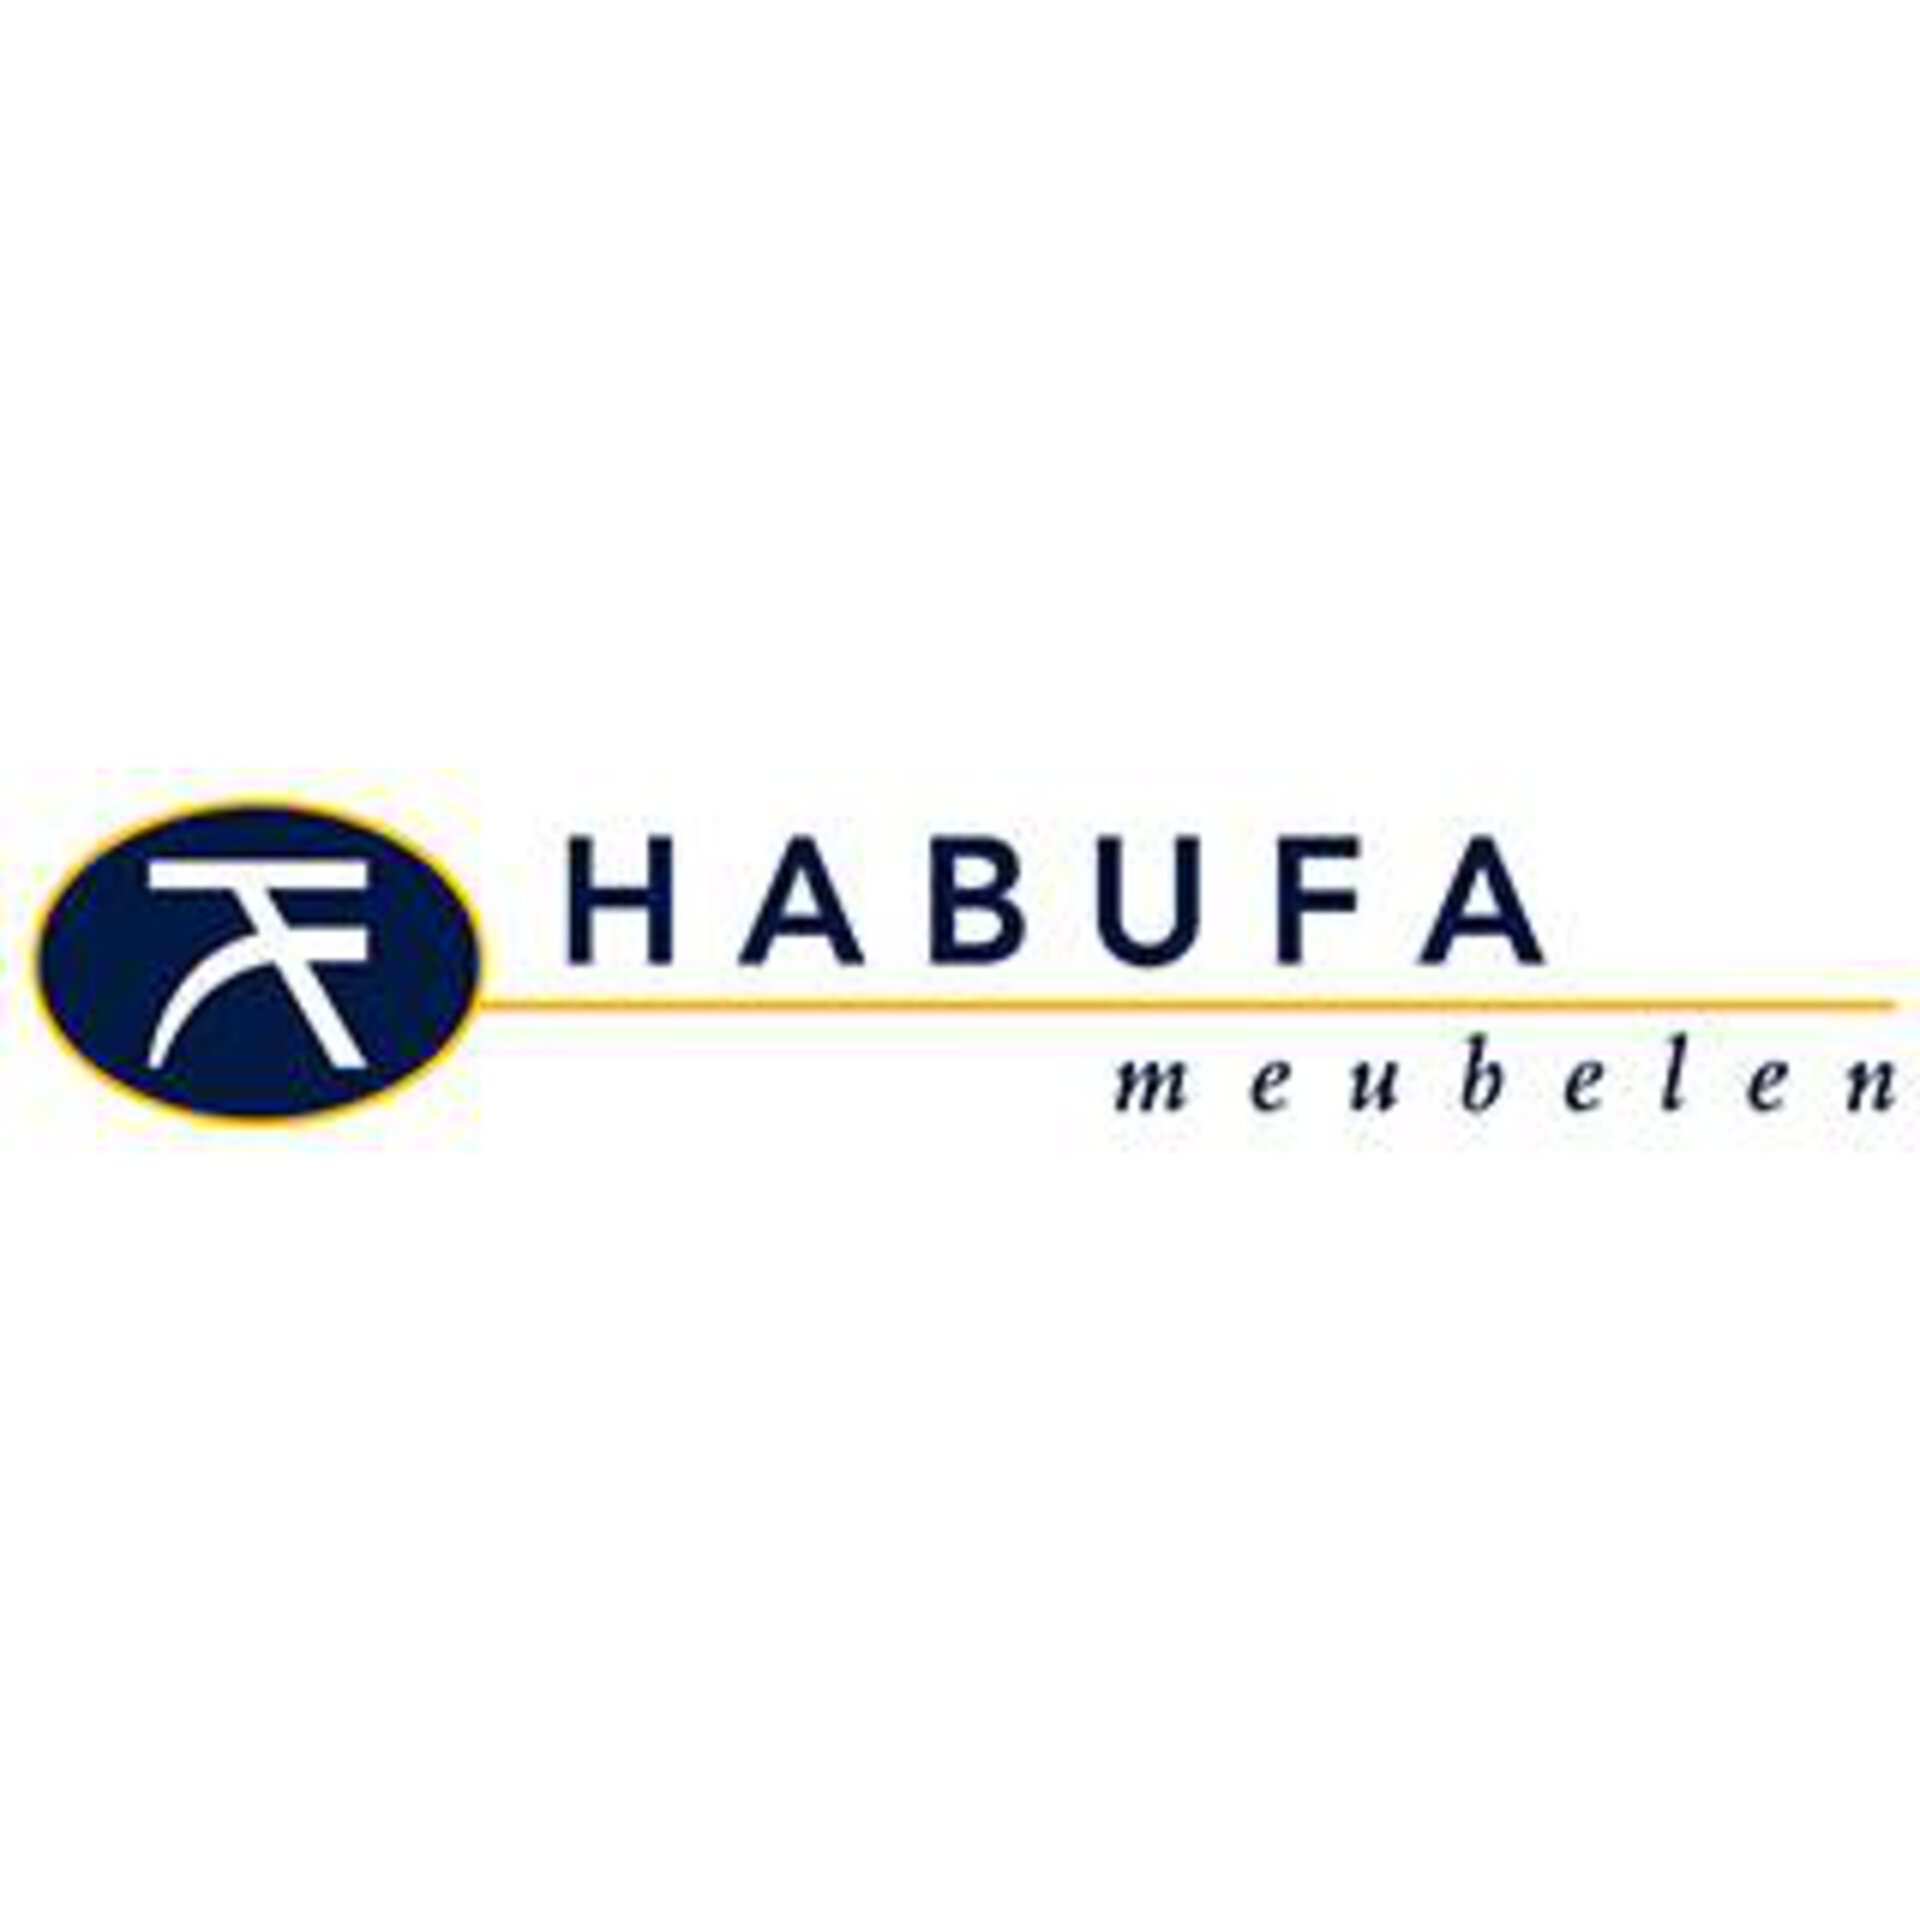 HABUFA - meubelen Logo